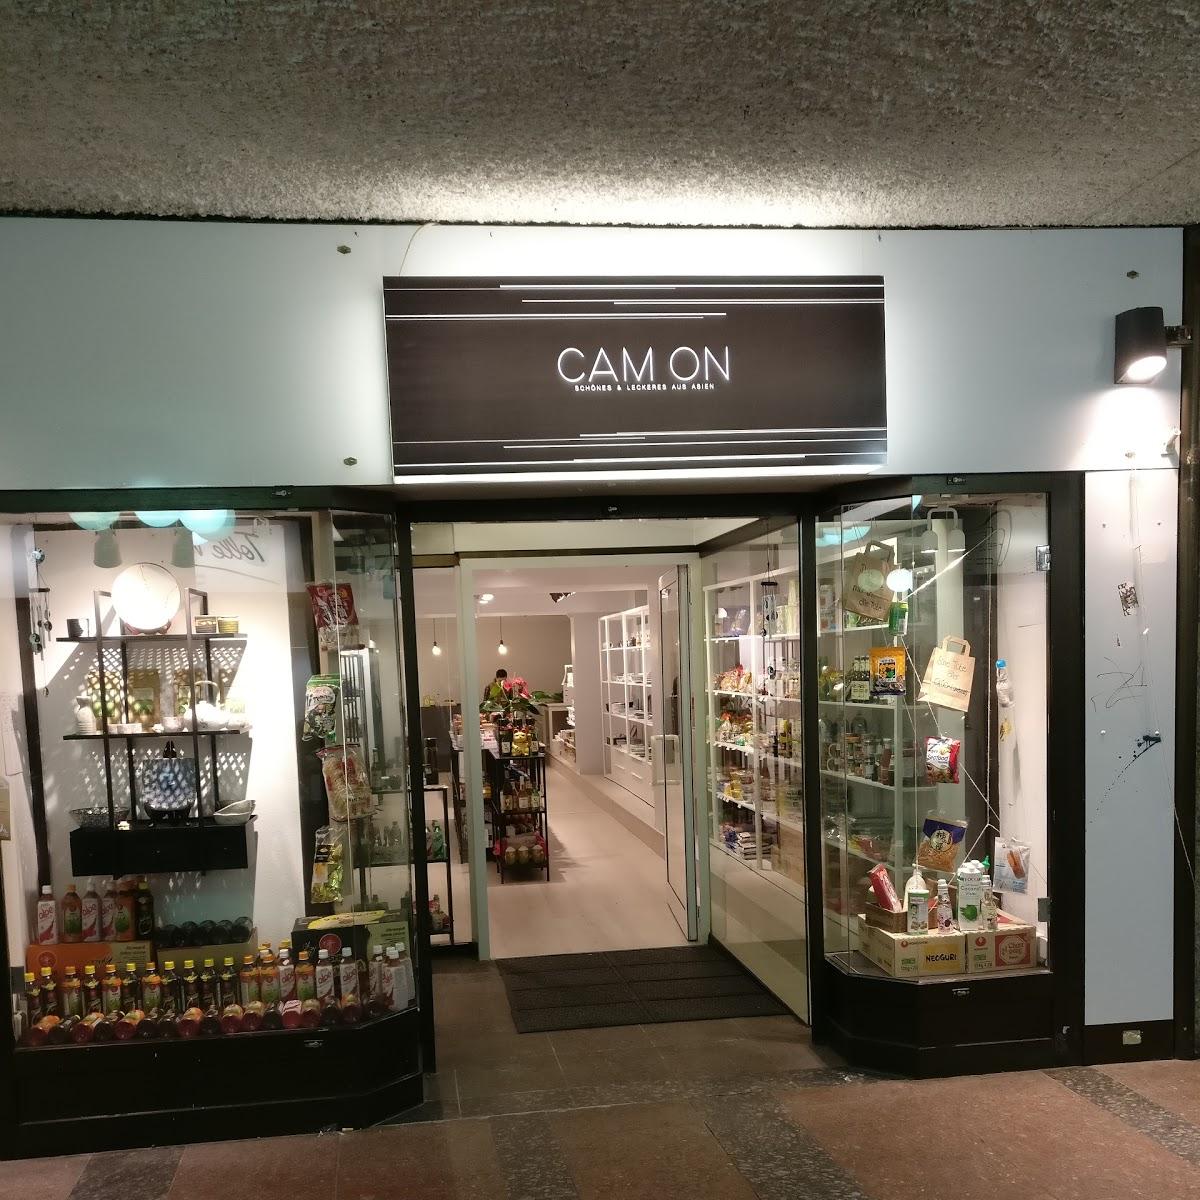 Restaurant "Cam On - Asia Shop" in Nürnberg